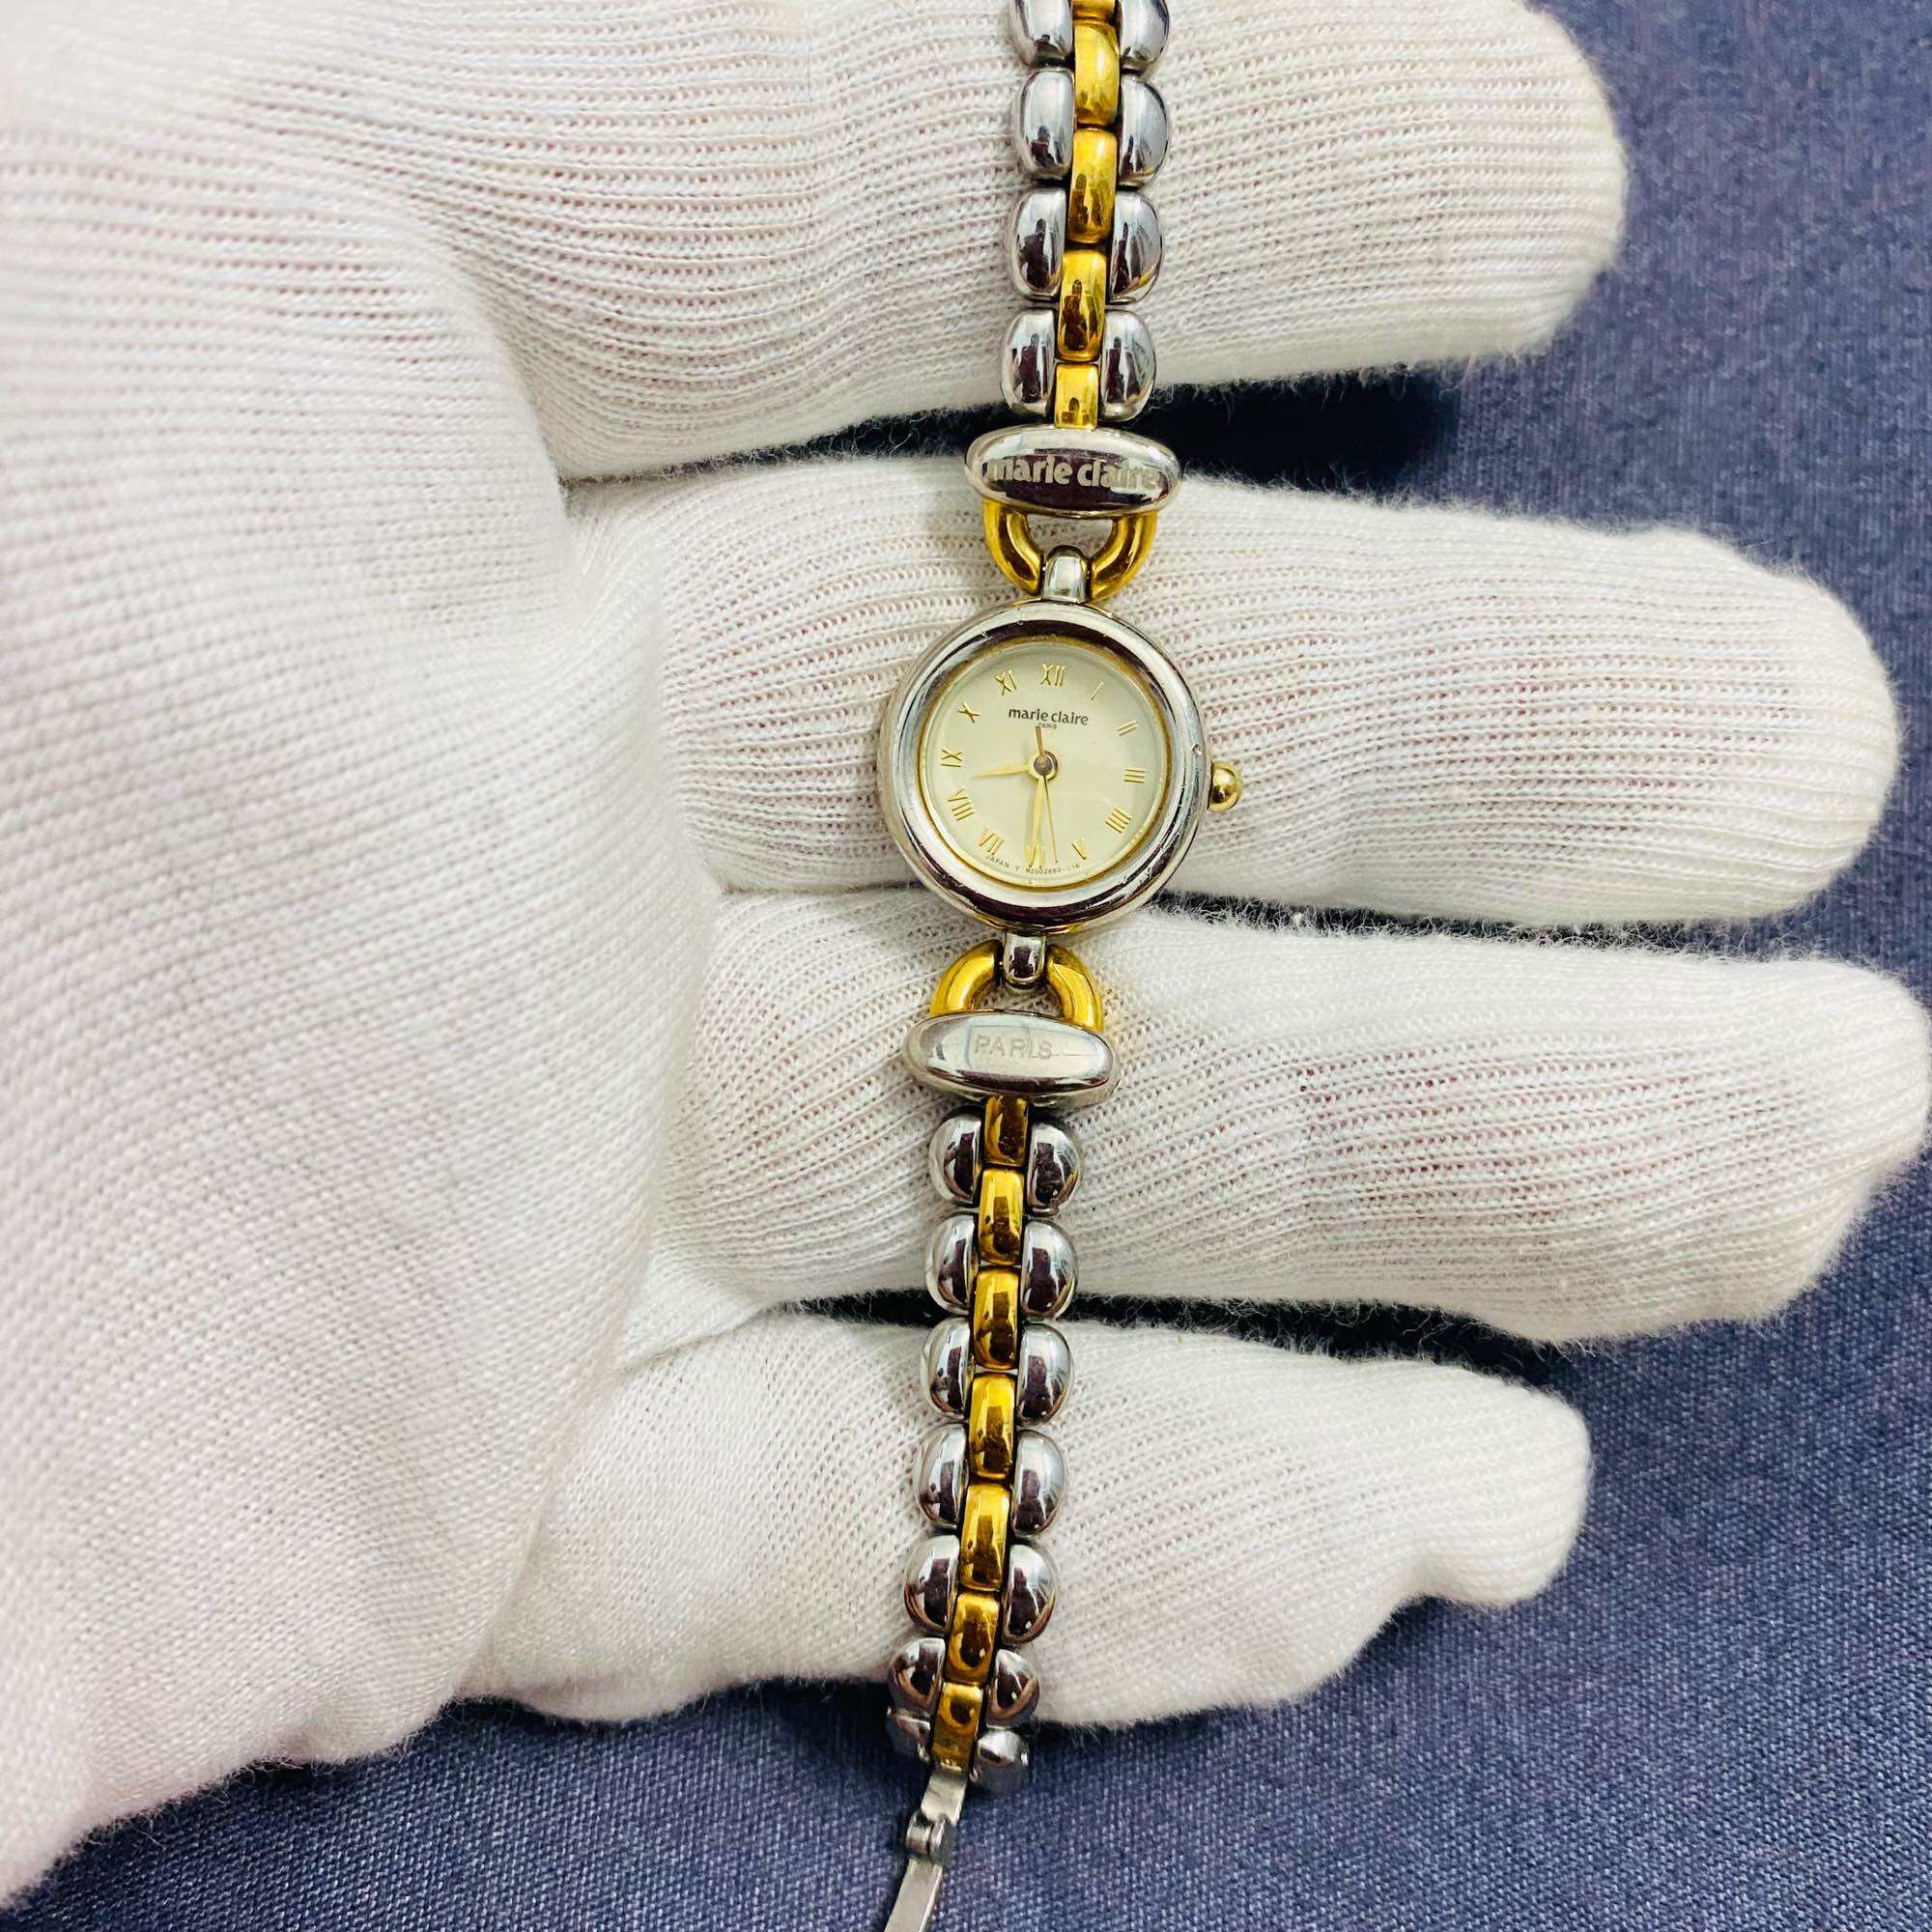 Đồng hồ nữ Marie claire , mặt size 19mm, dây tháo không rỉ, độ mới đạt 95%, cam kết hàng chính hãng